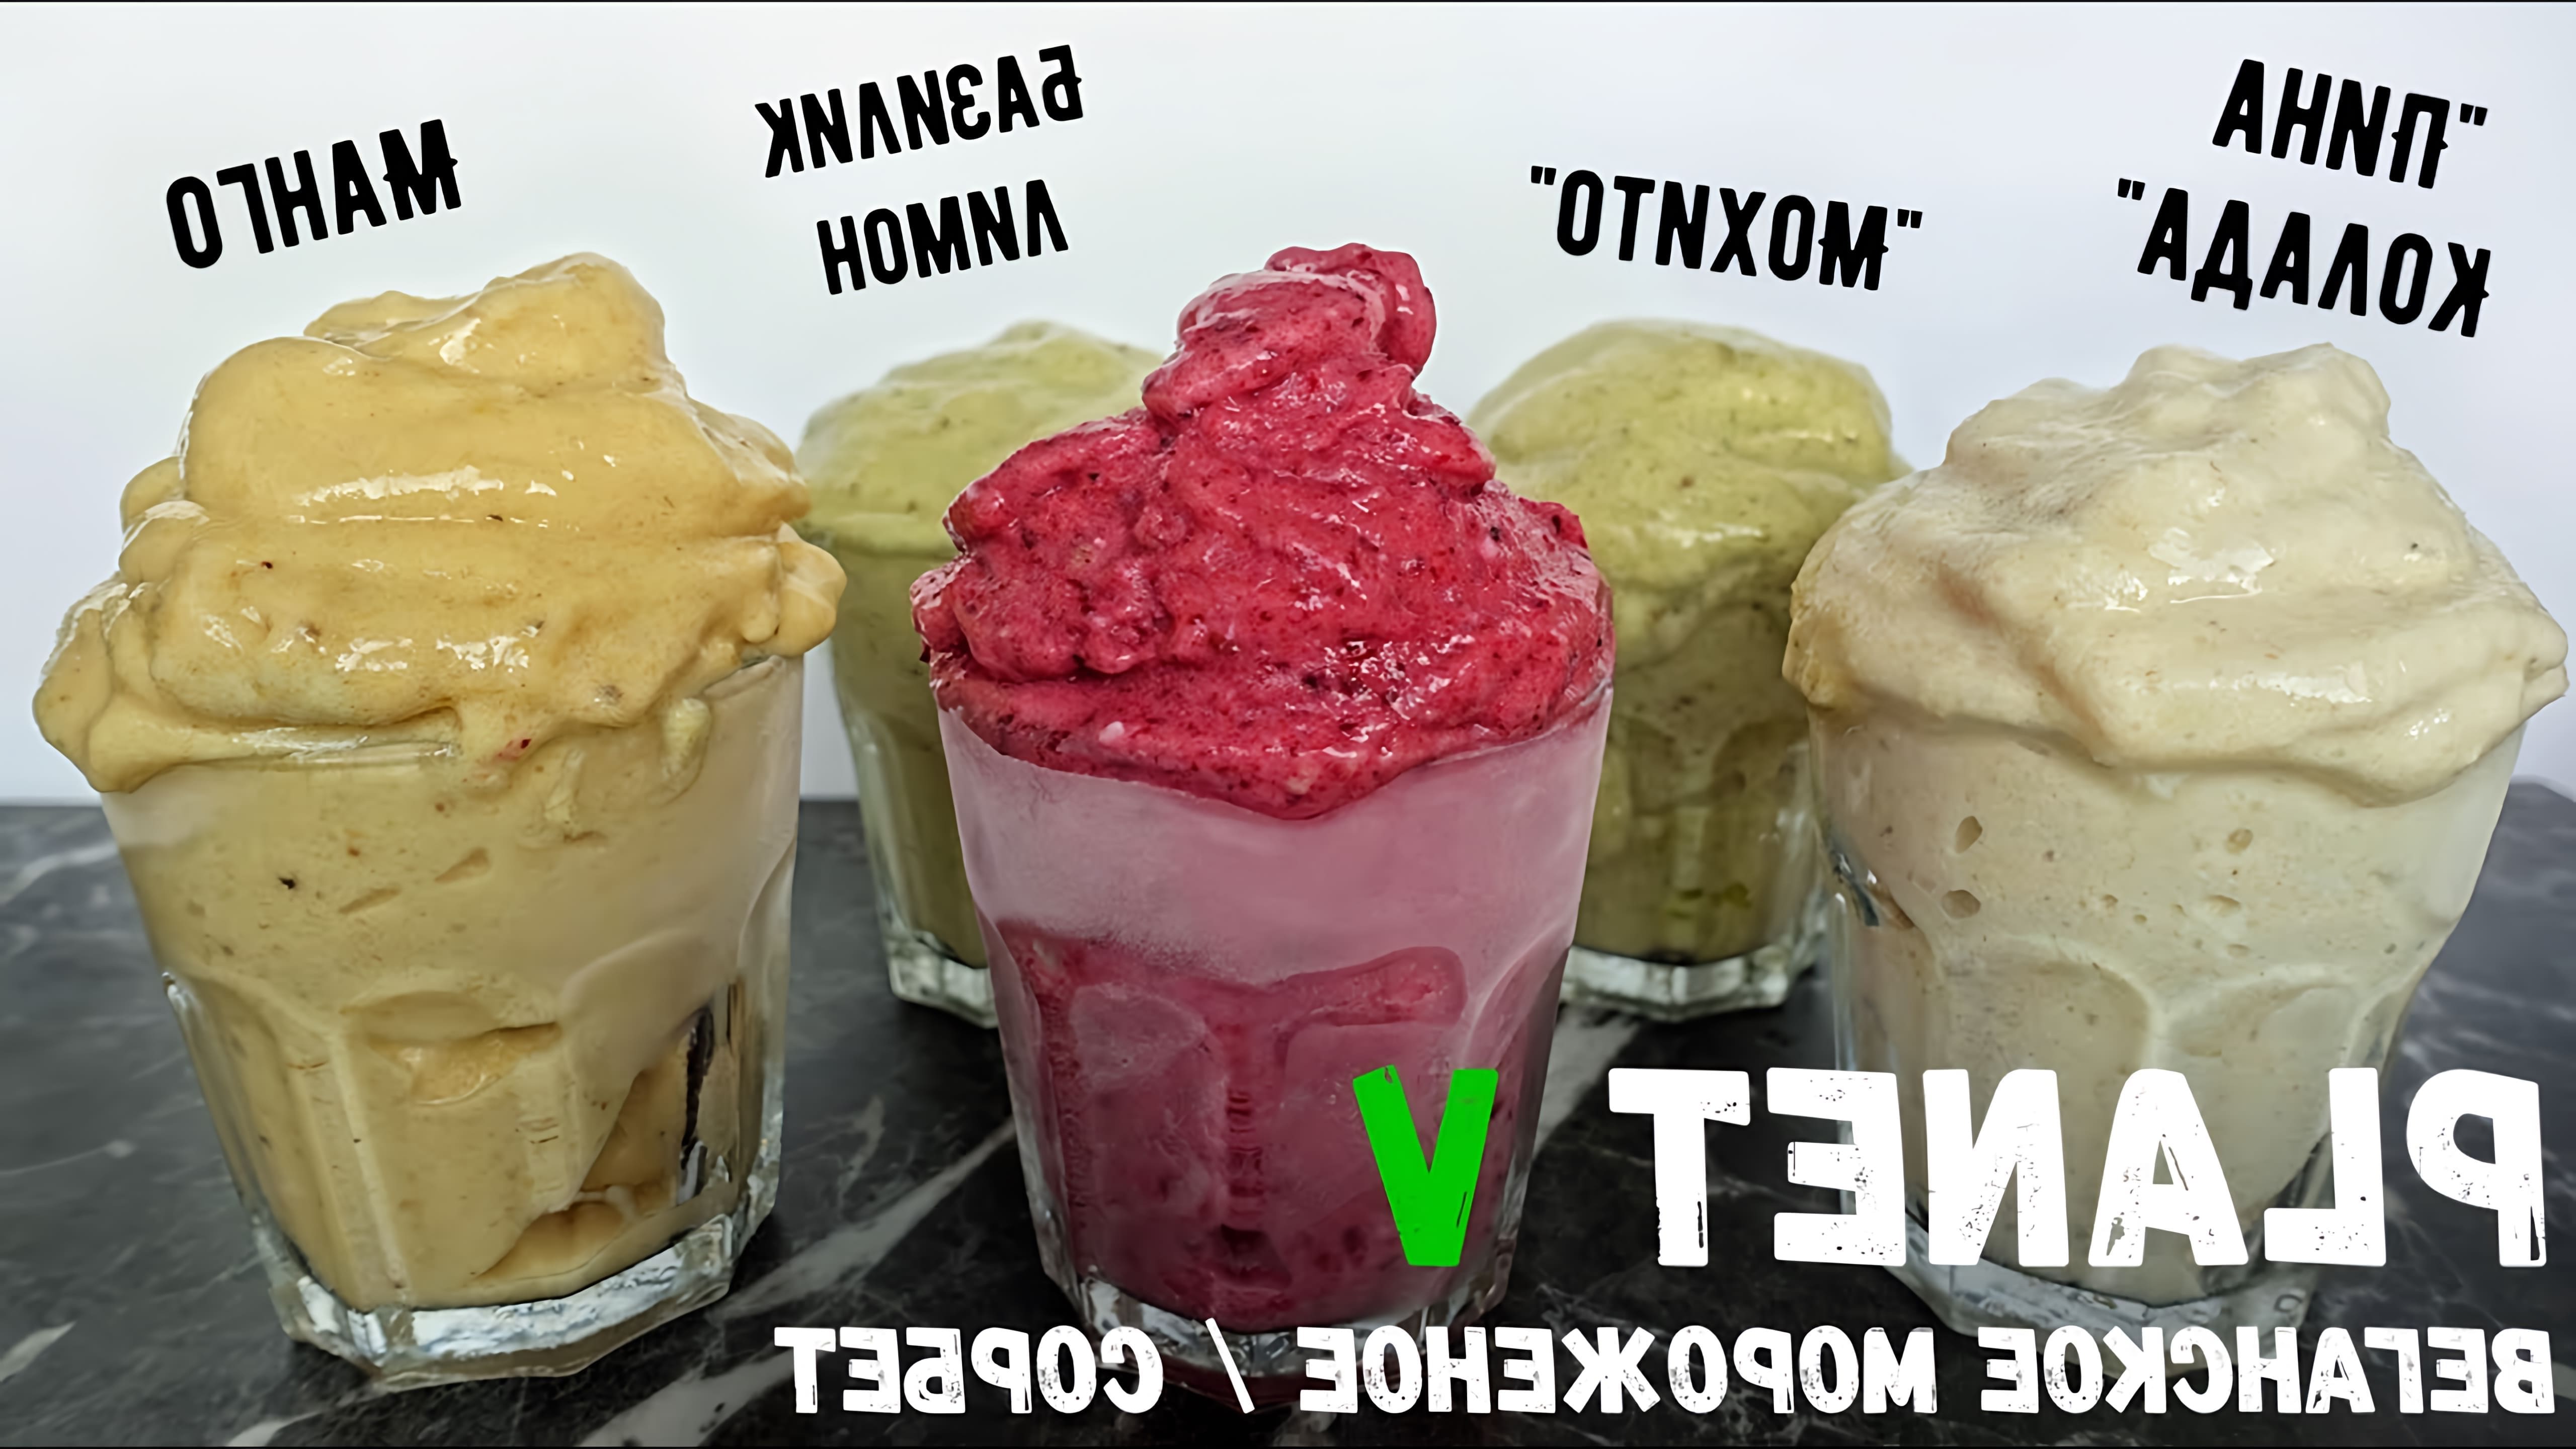 Видео как приготовить 5 различных видов веганского мороженого, используя замороженные бананы в качестве основного ингредиента и подсластителя